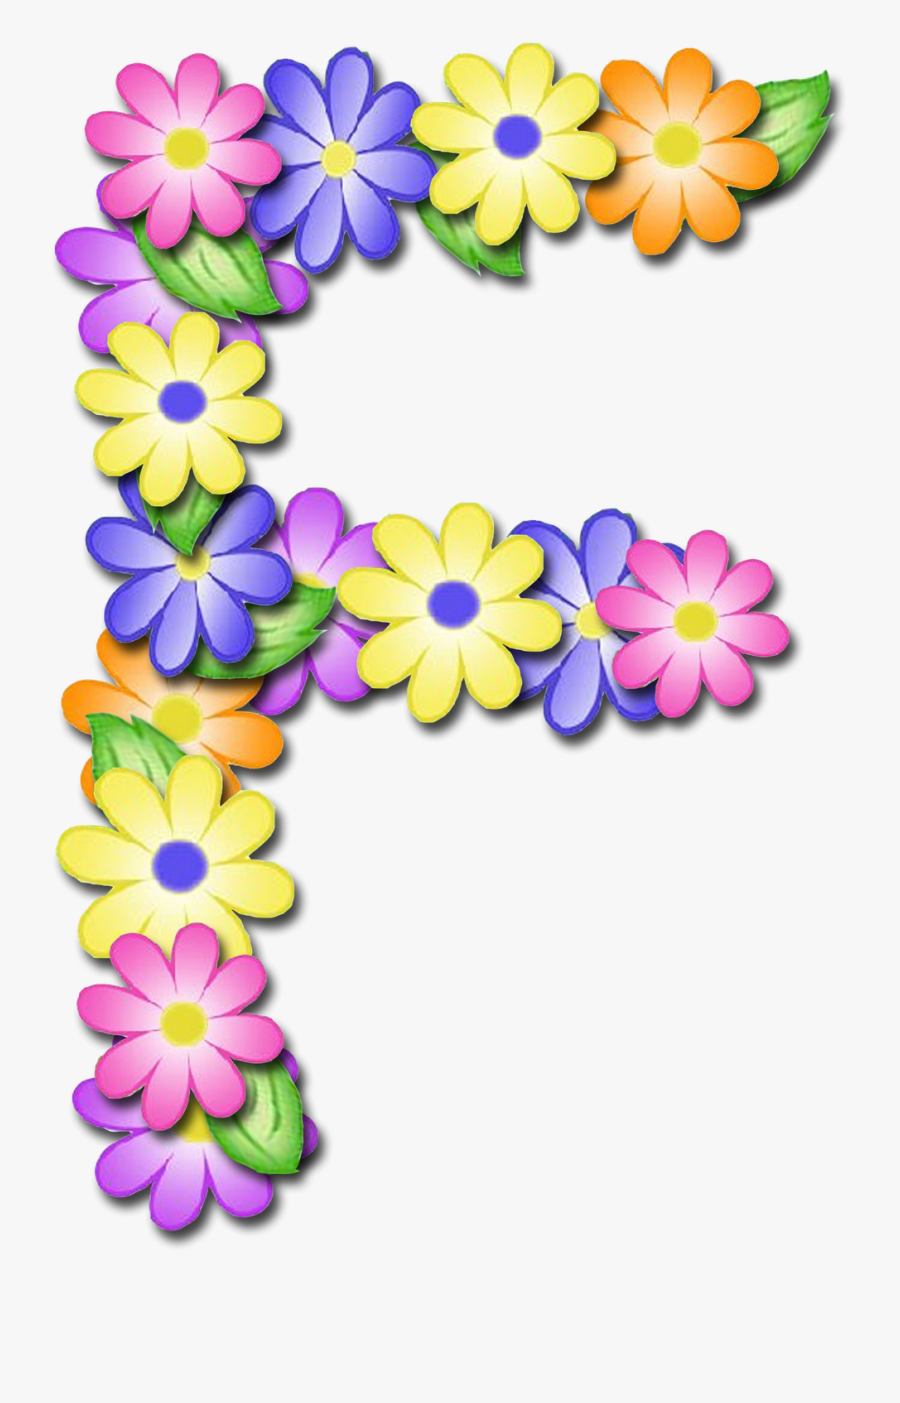 Transparent Clipart Alphabet Letters - Letter E Clipart Flower, Transparent Clipart